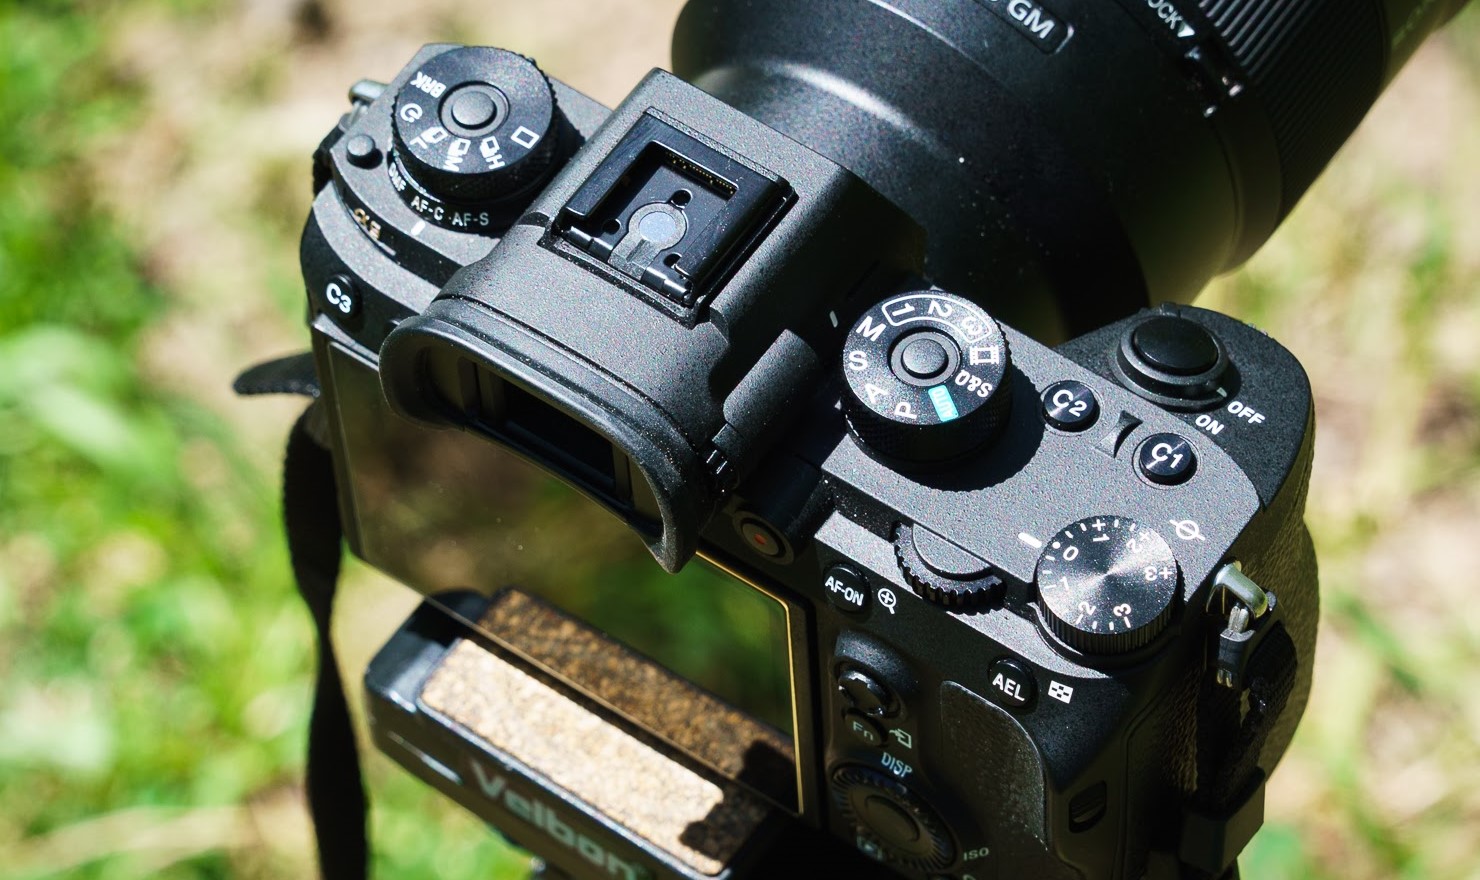 Sony A9 Camera: The Gizmodo Review